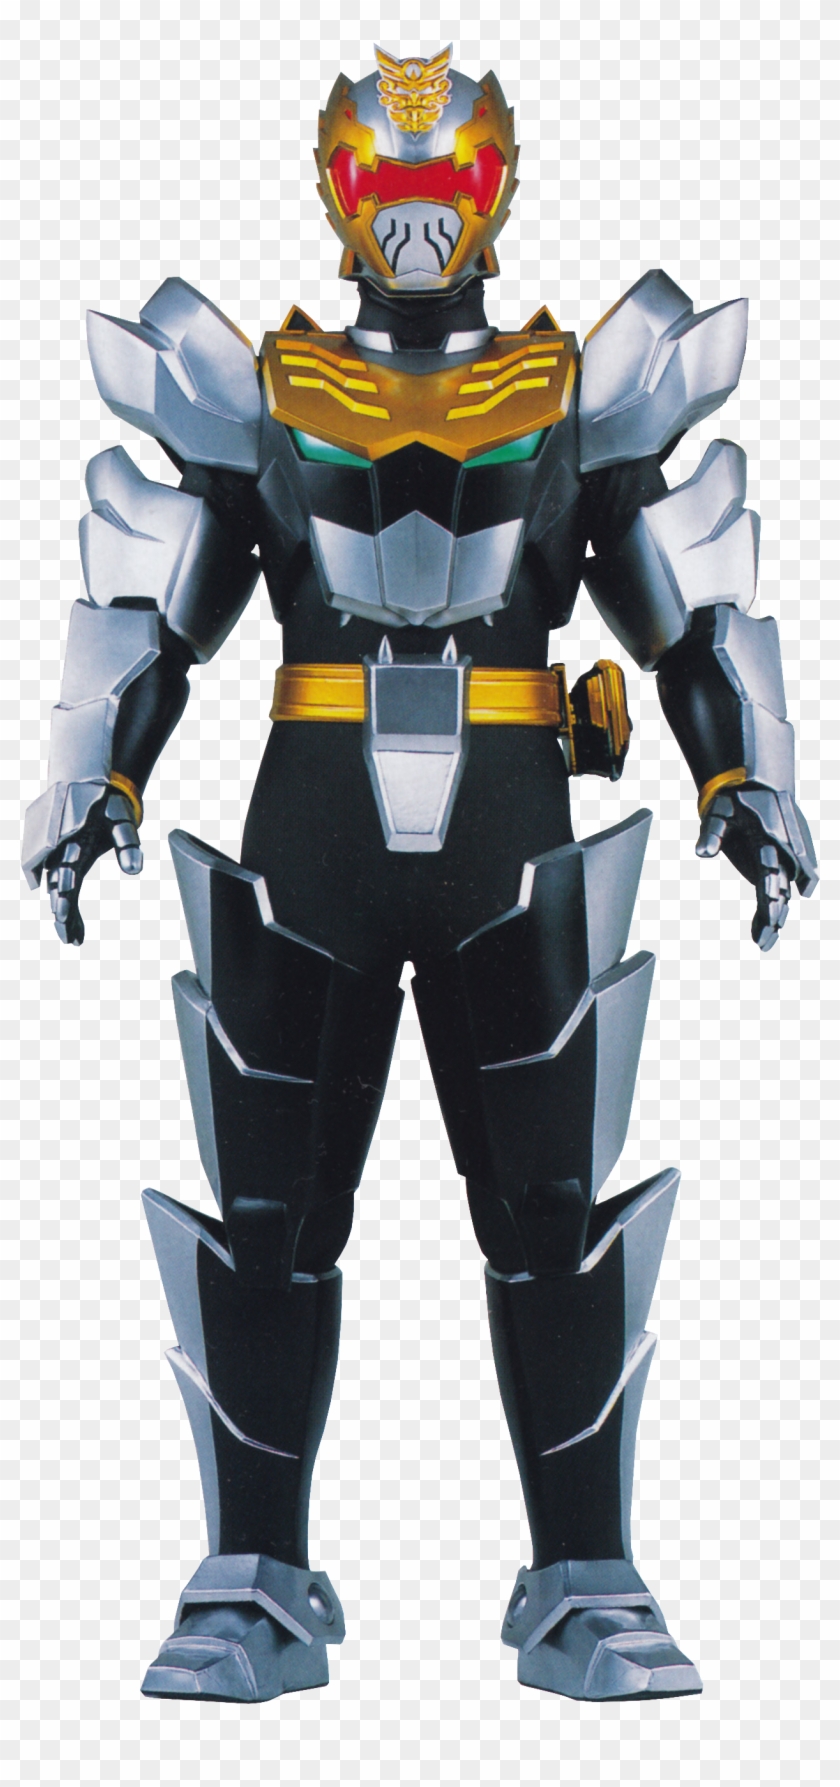 Prm-knight - Power Rangers Robo Knight #344806